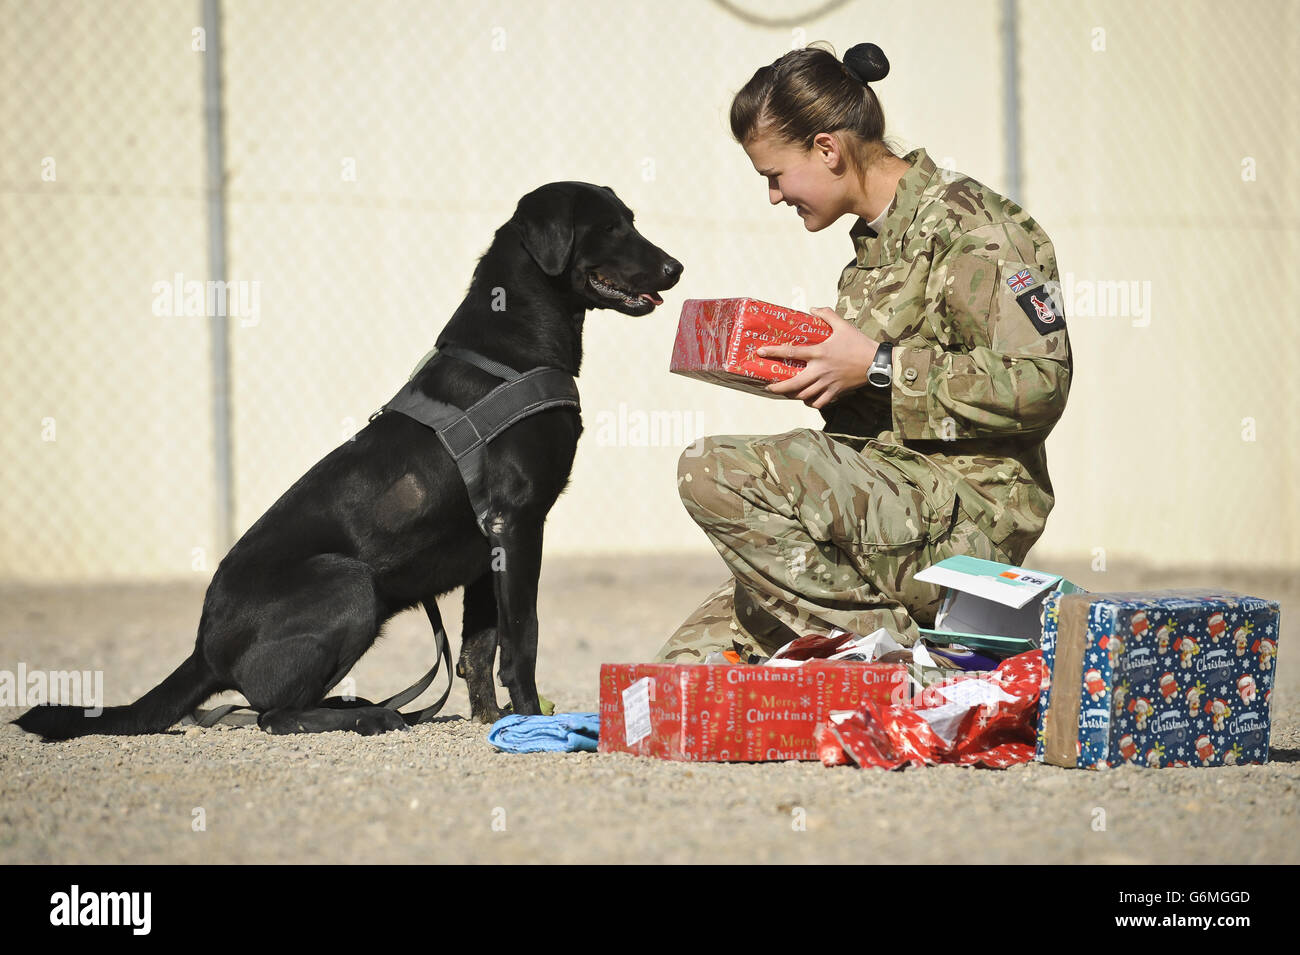 Privat Zina Saunders, eine Hundeführerin mit 1 Military Working Dogs, schenkt Hazel, die als Suchhund arbeitet, Weihnachtsgeschenke, die von den Freunden und der Familie des Hundeführers in Großbritannien geschickt wurden. Stockfoto